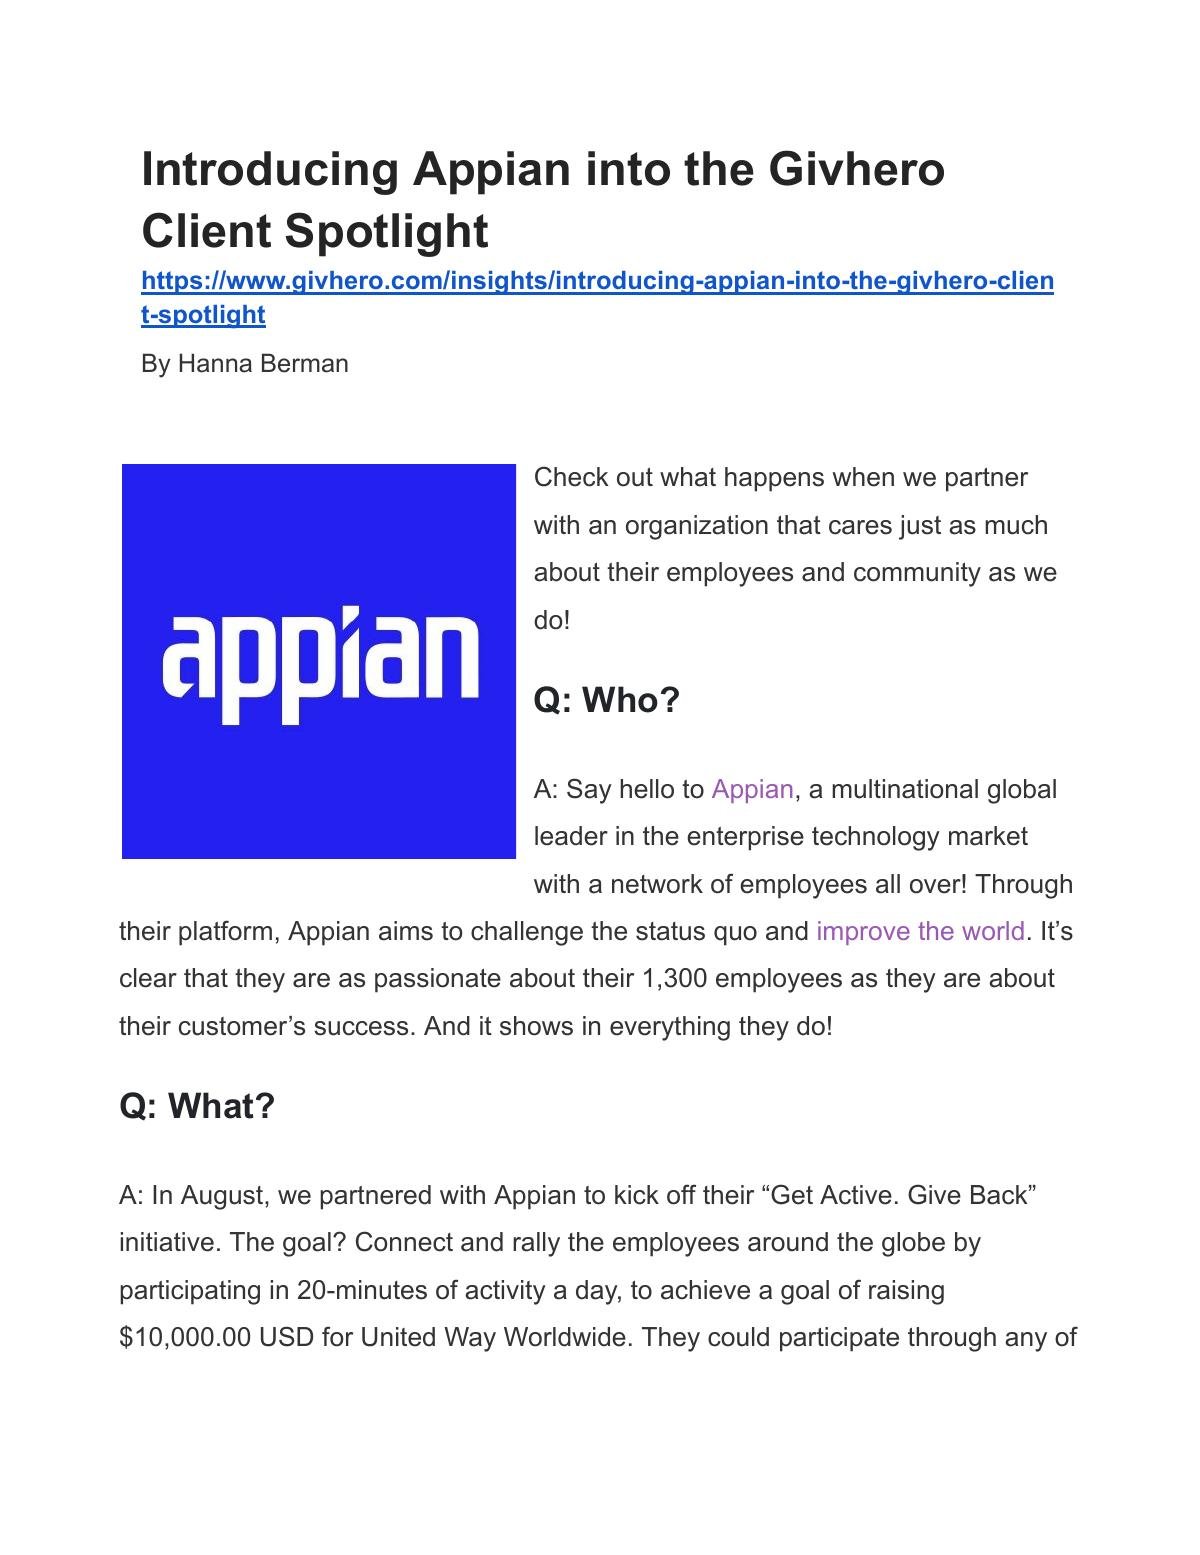 Appian Client Success Story